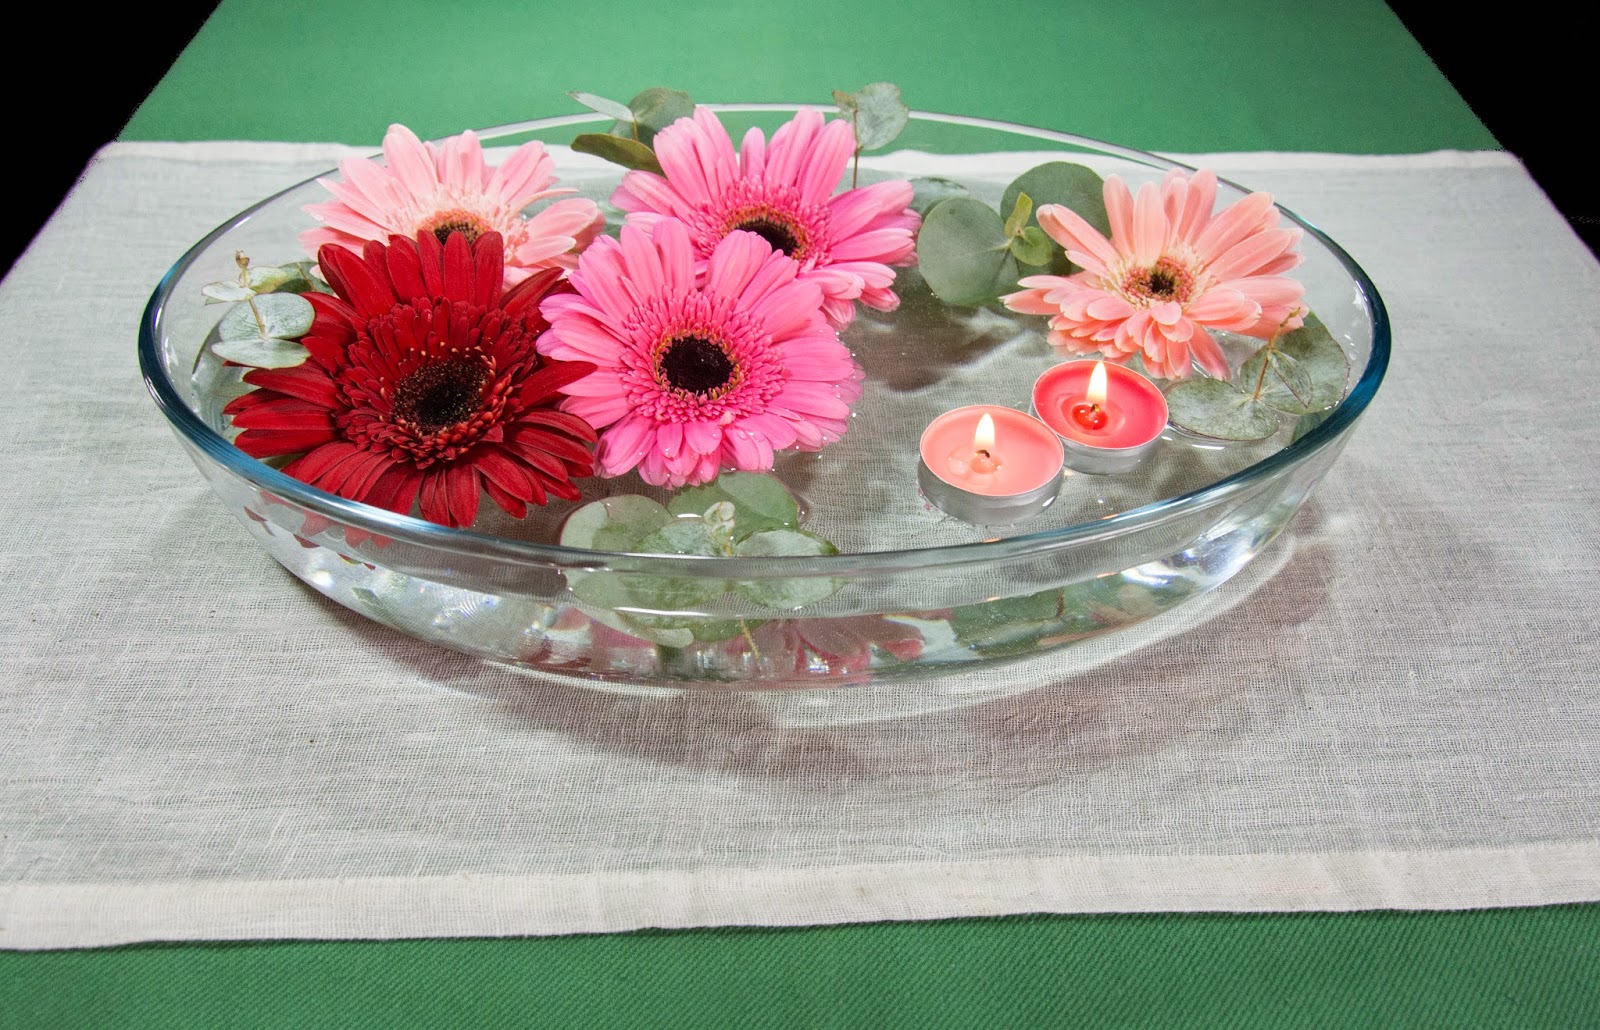 centro de mesa con flores y velas flotantes